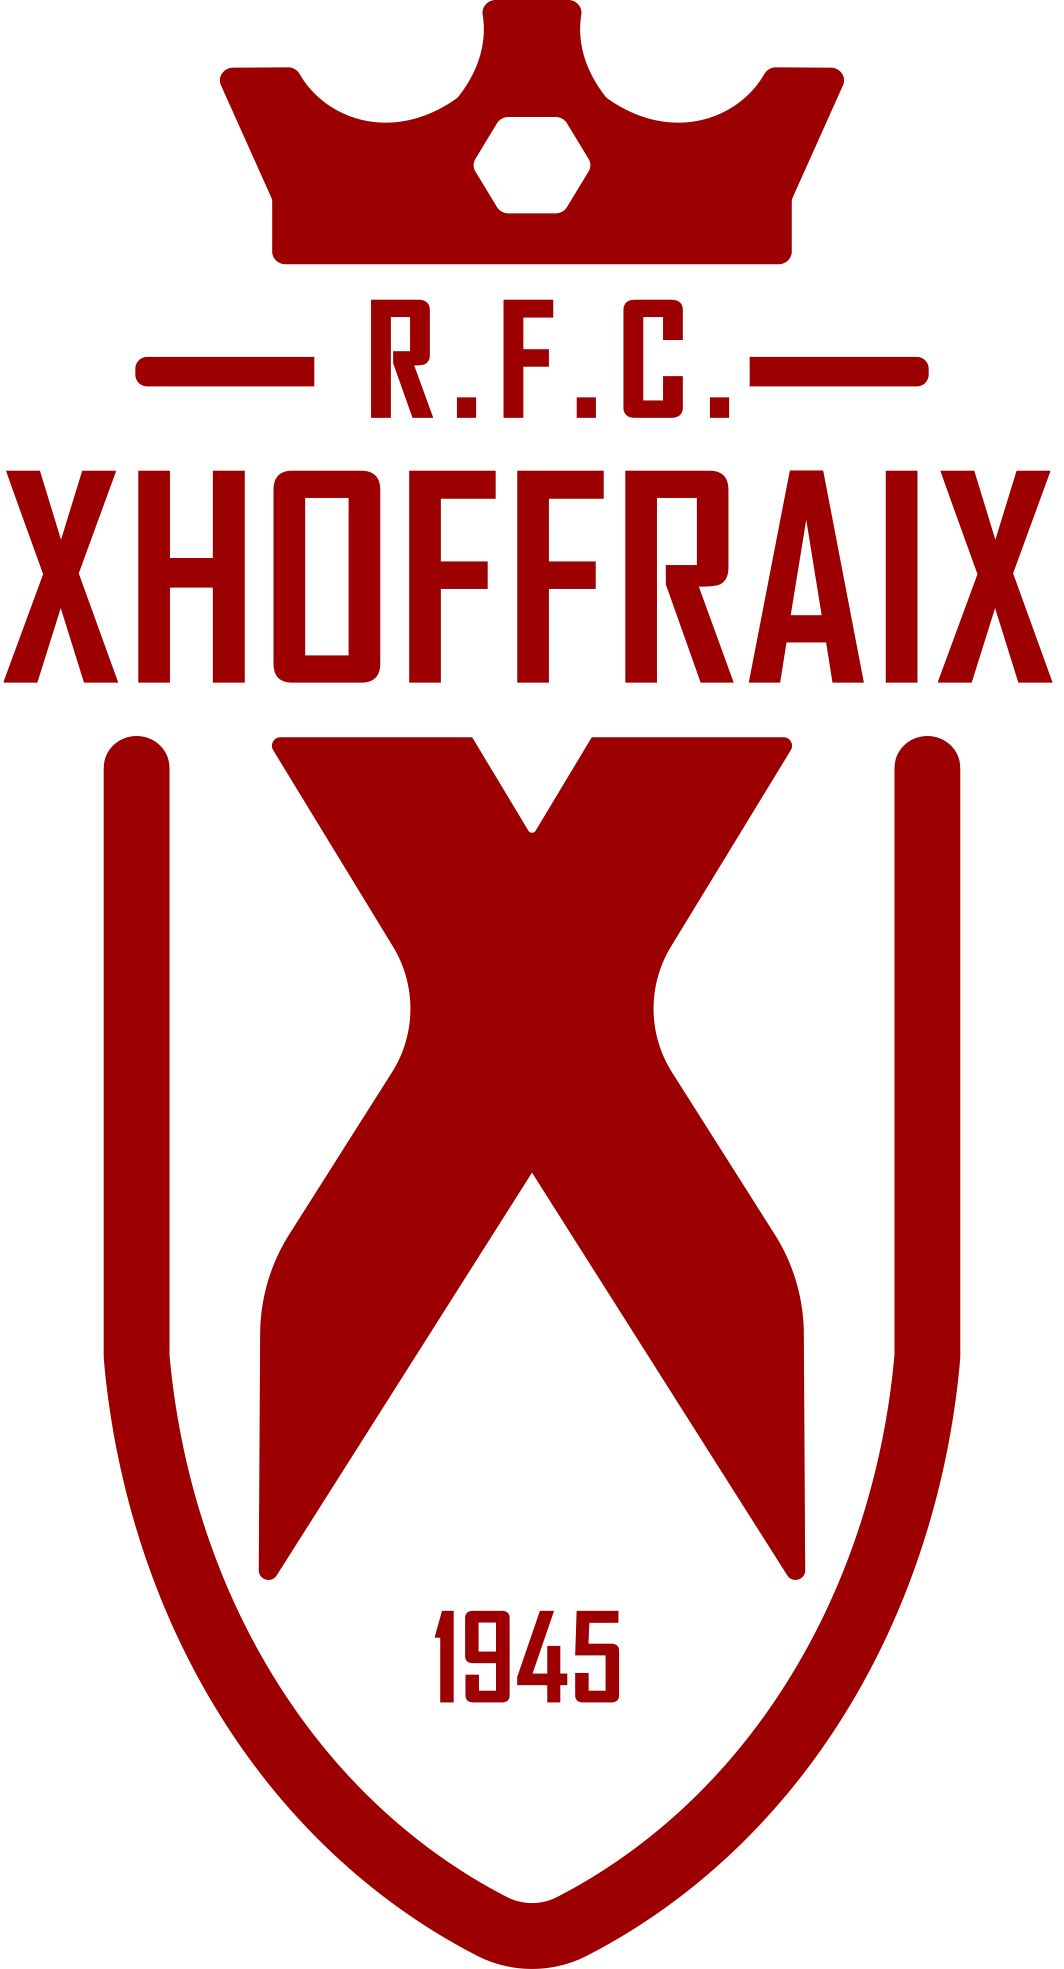 5 - R.F.C. Xhoffraix